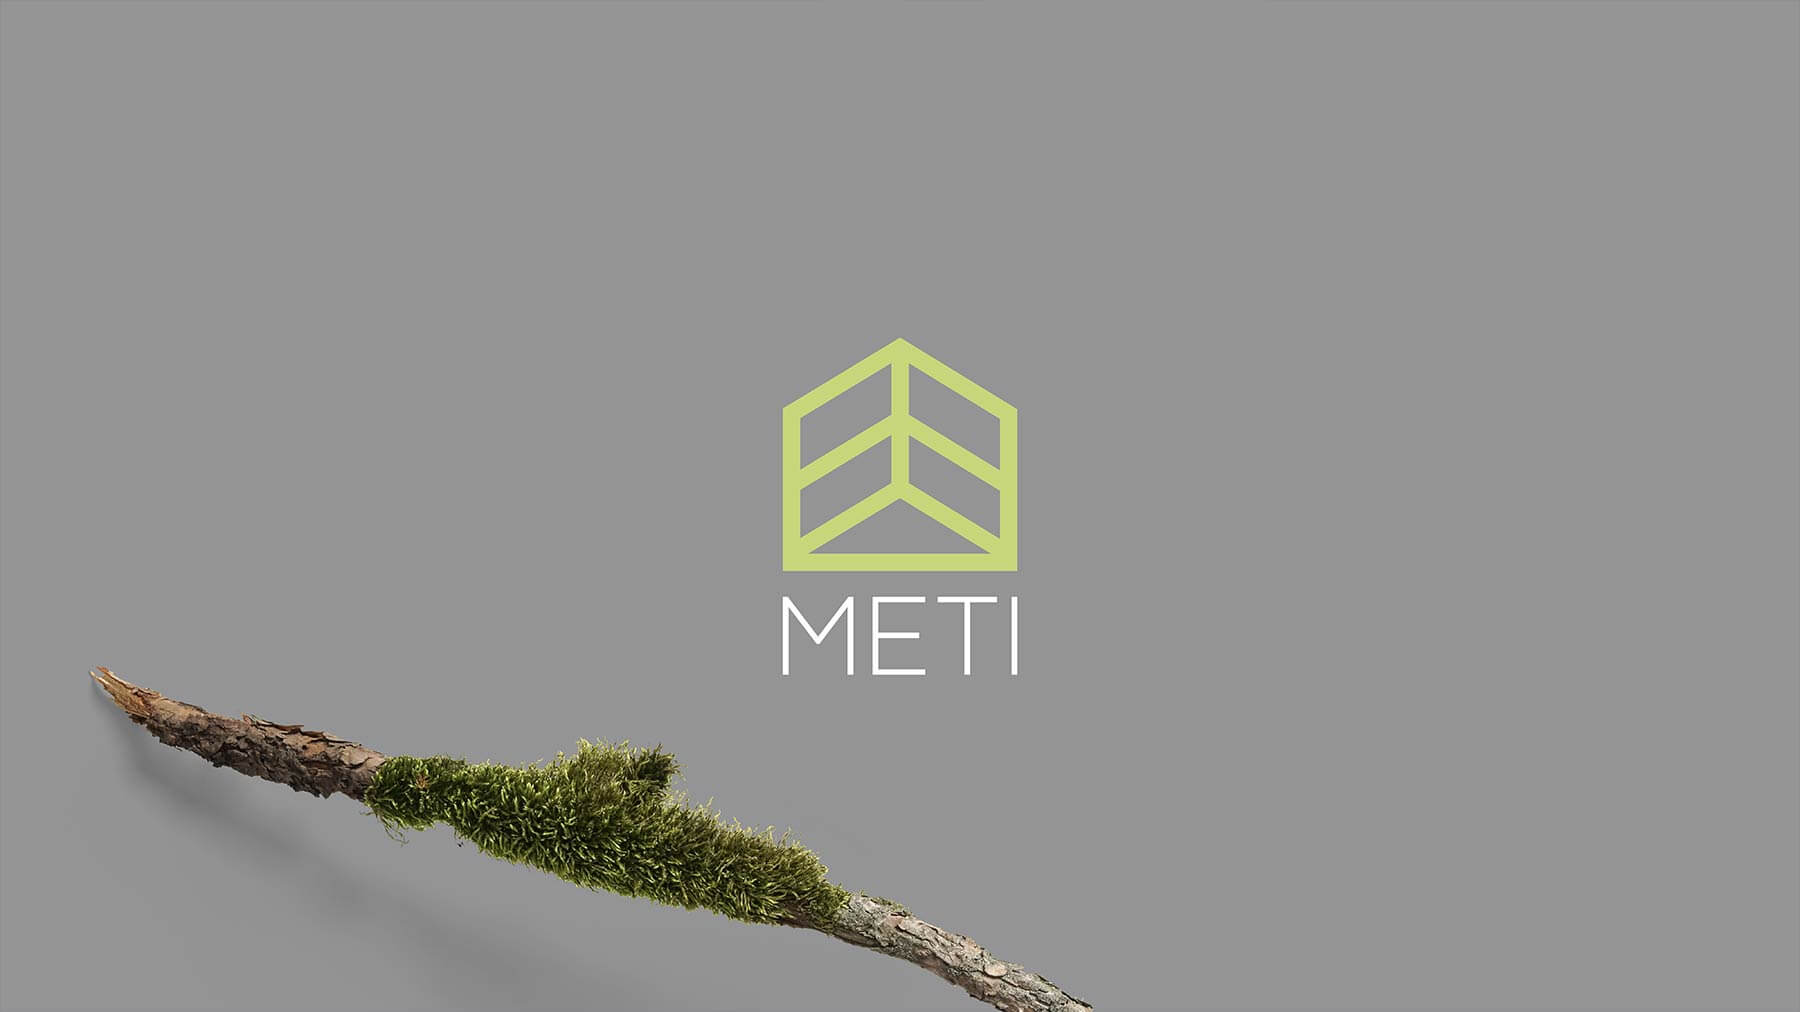 Logo e brand identity di Meti realizzato da SEBA! grafico di Gravellona Toce nel VCO della versione verde e bianca su grigio